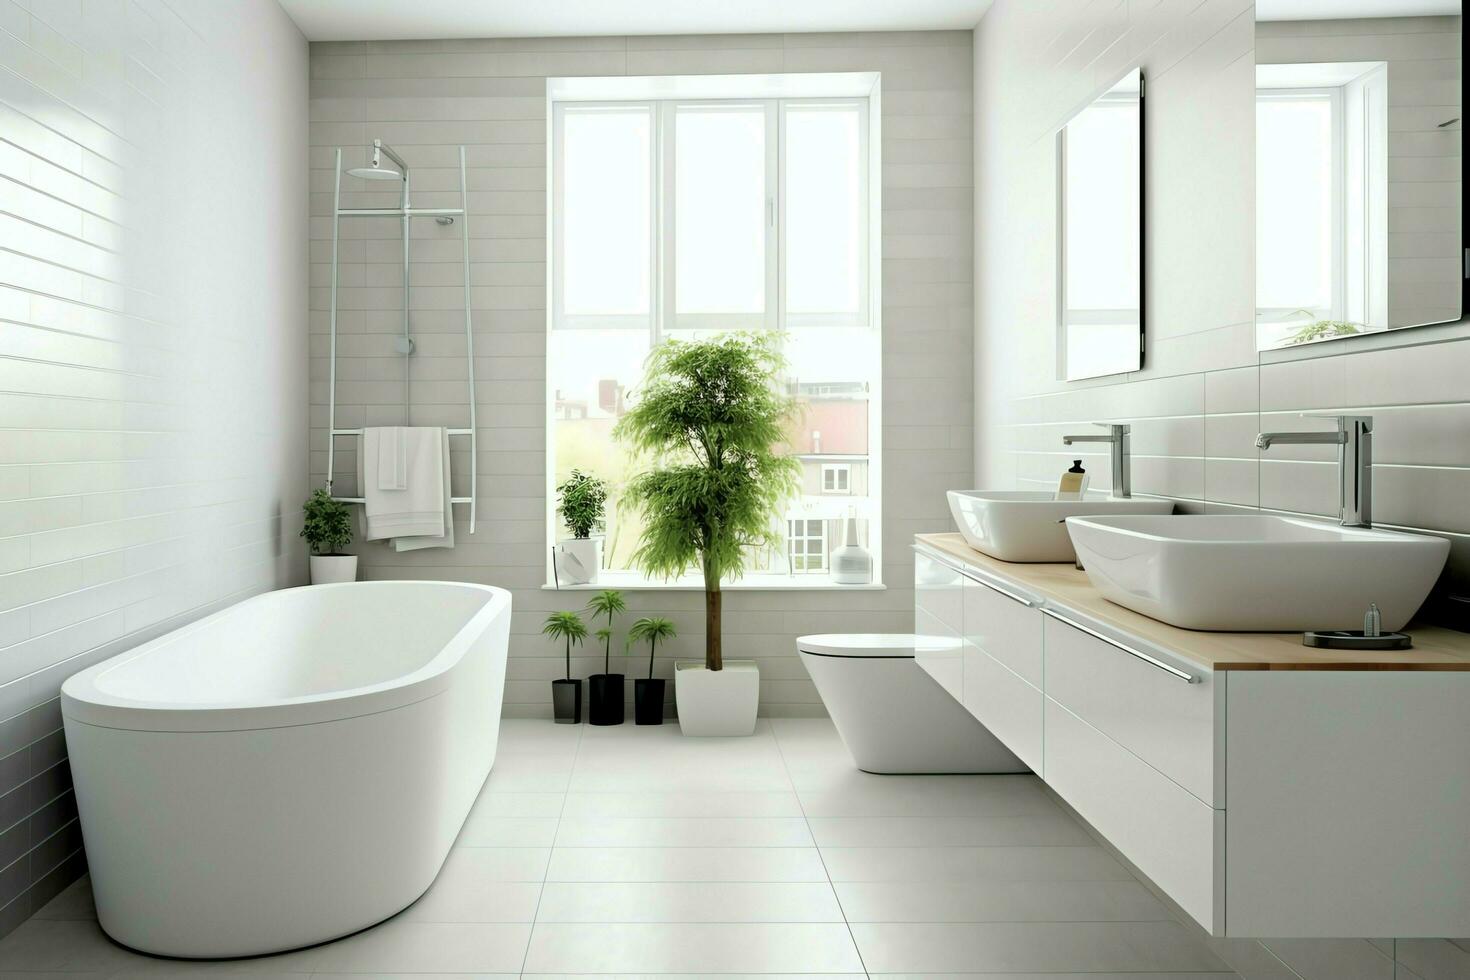 Innere Design von ein nett modern Badezimmer. 3d Rendern modern Toilette oder Badezimmer im Hotel oder Haus Konzept durch ai generiert foto